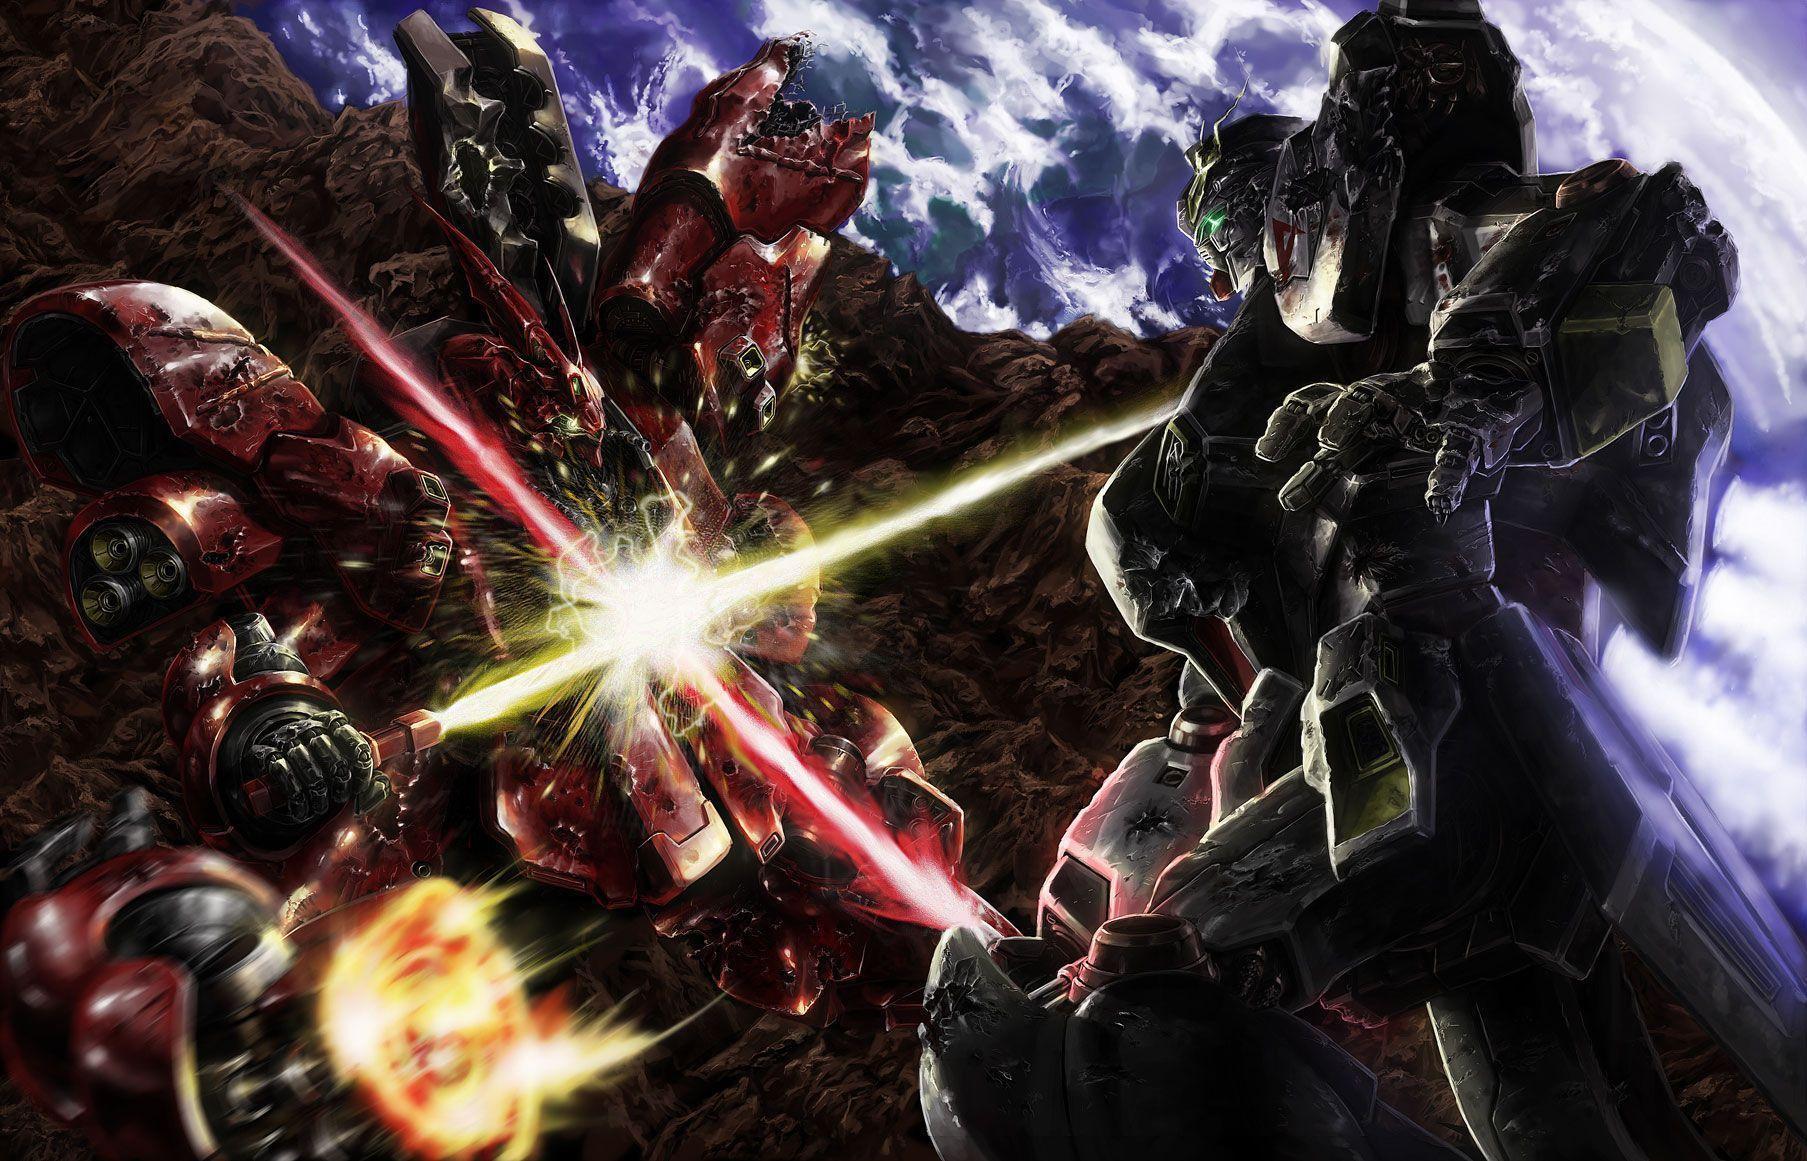 image For > Gundam Wallpaper